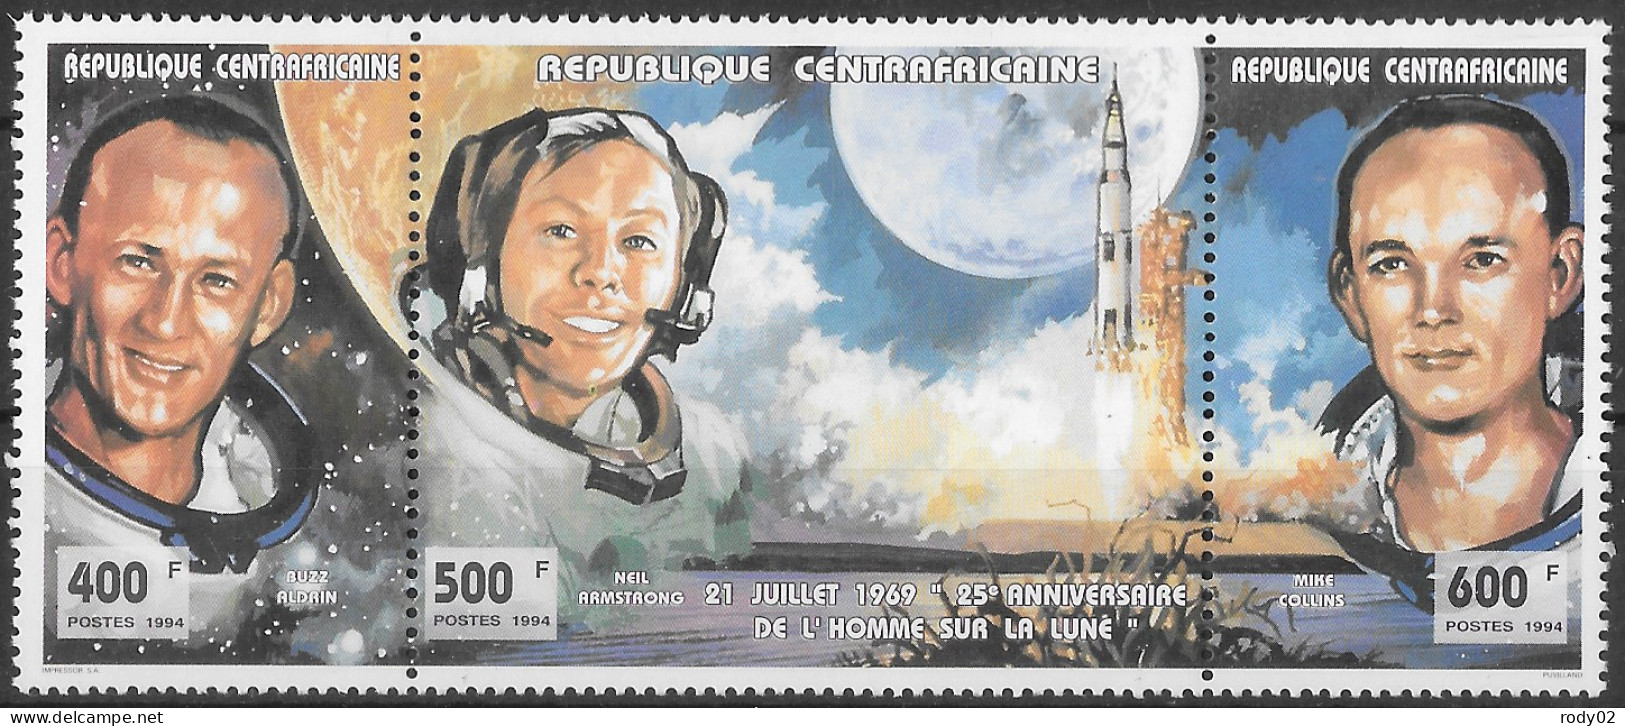 CENTRAFRIQUE - ESPACE - 1ER HOMME SUR LA LUNE - ASTRONAUTES - N° 1005 A 1007 - NEUF** MNH - Africa